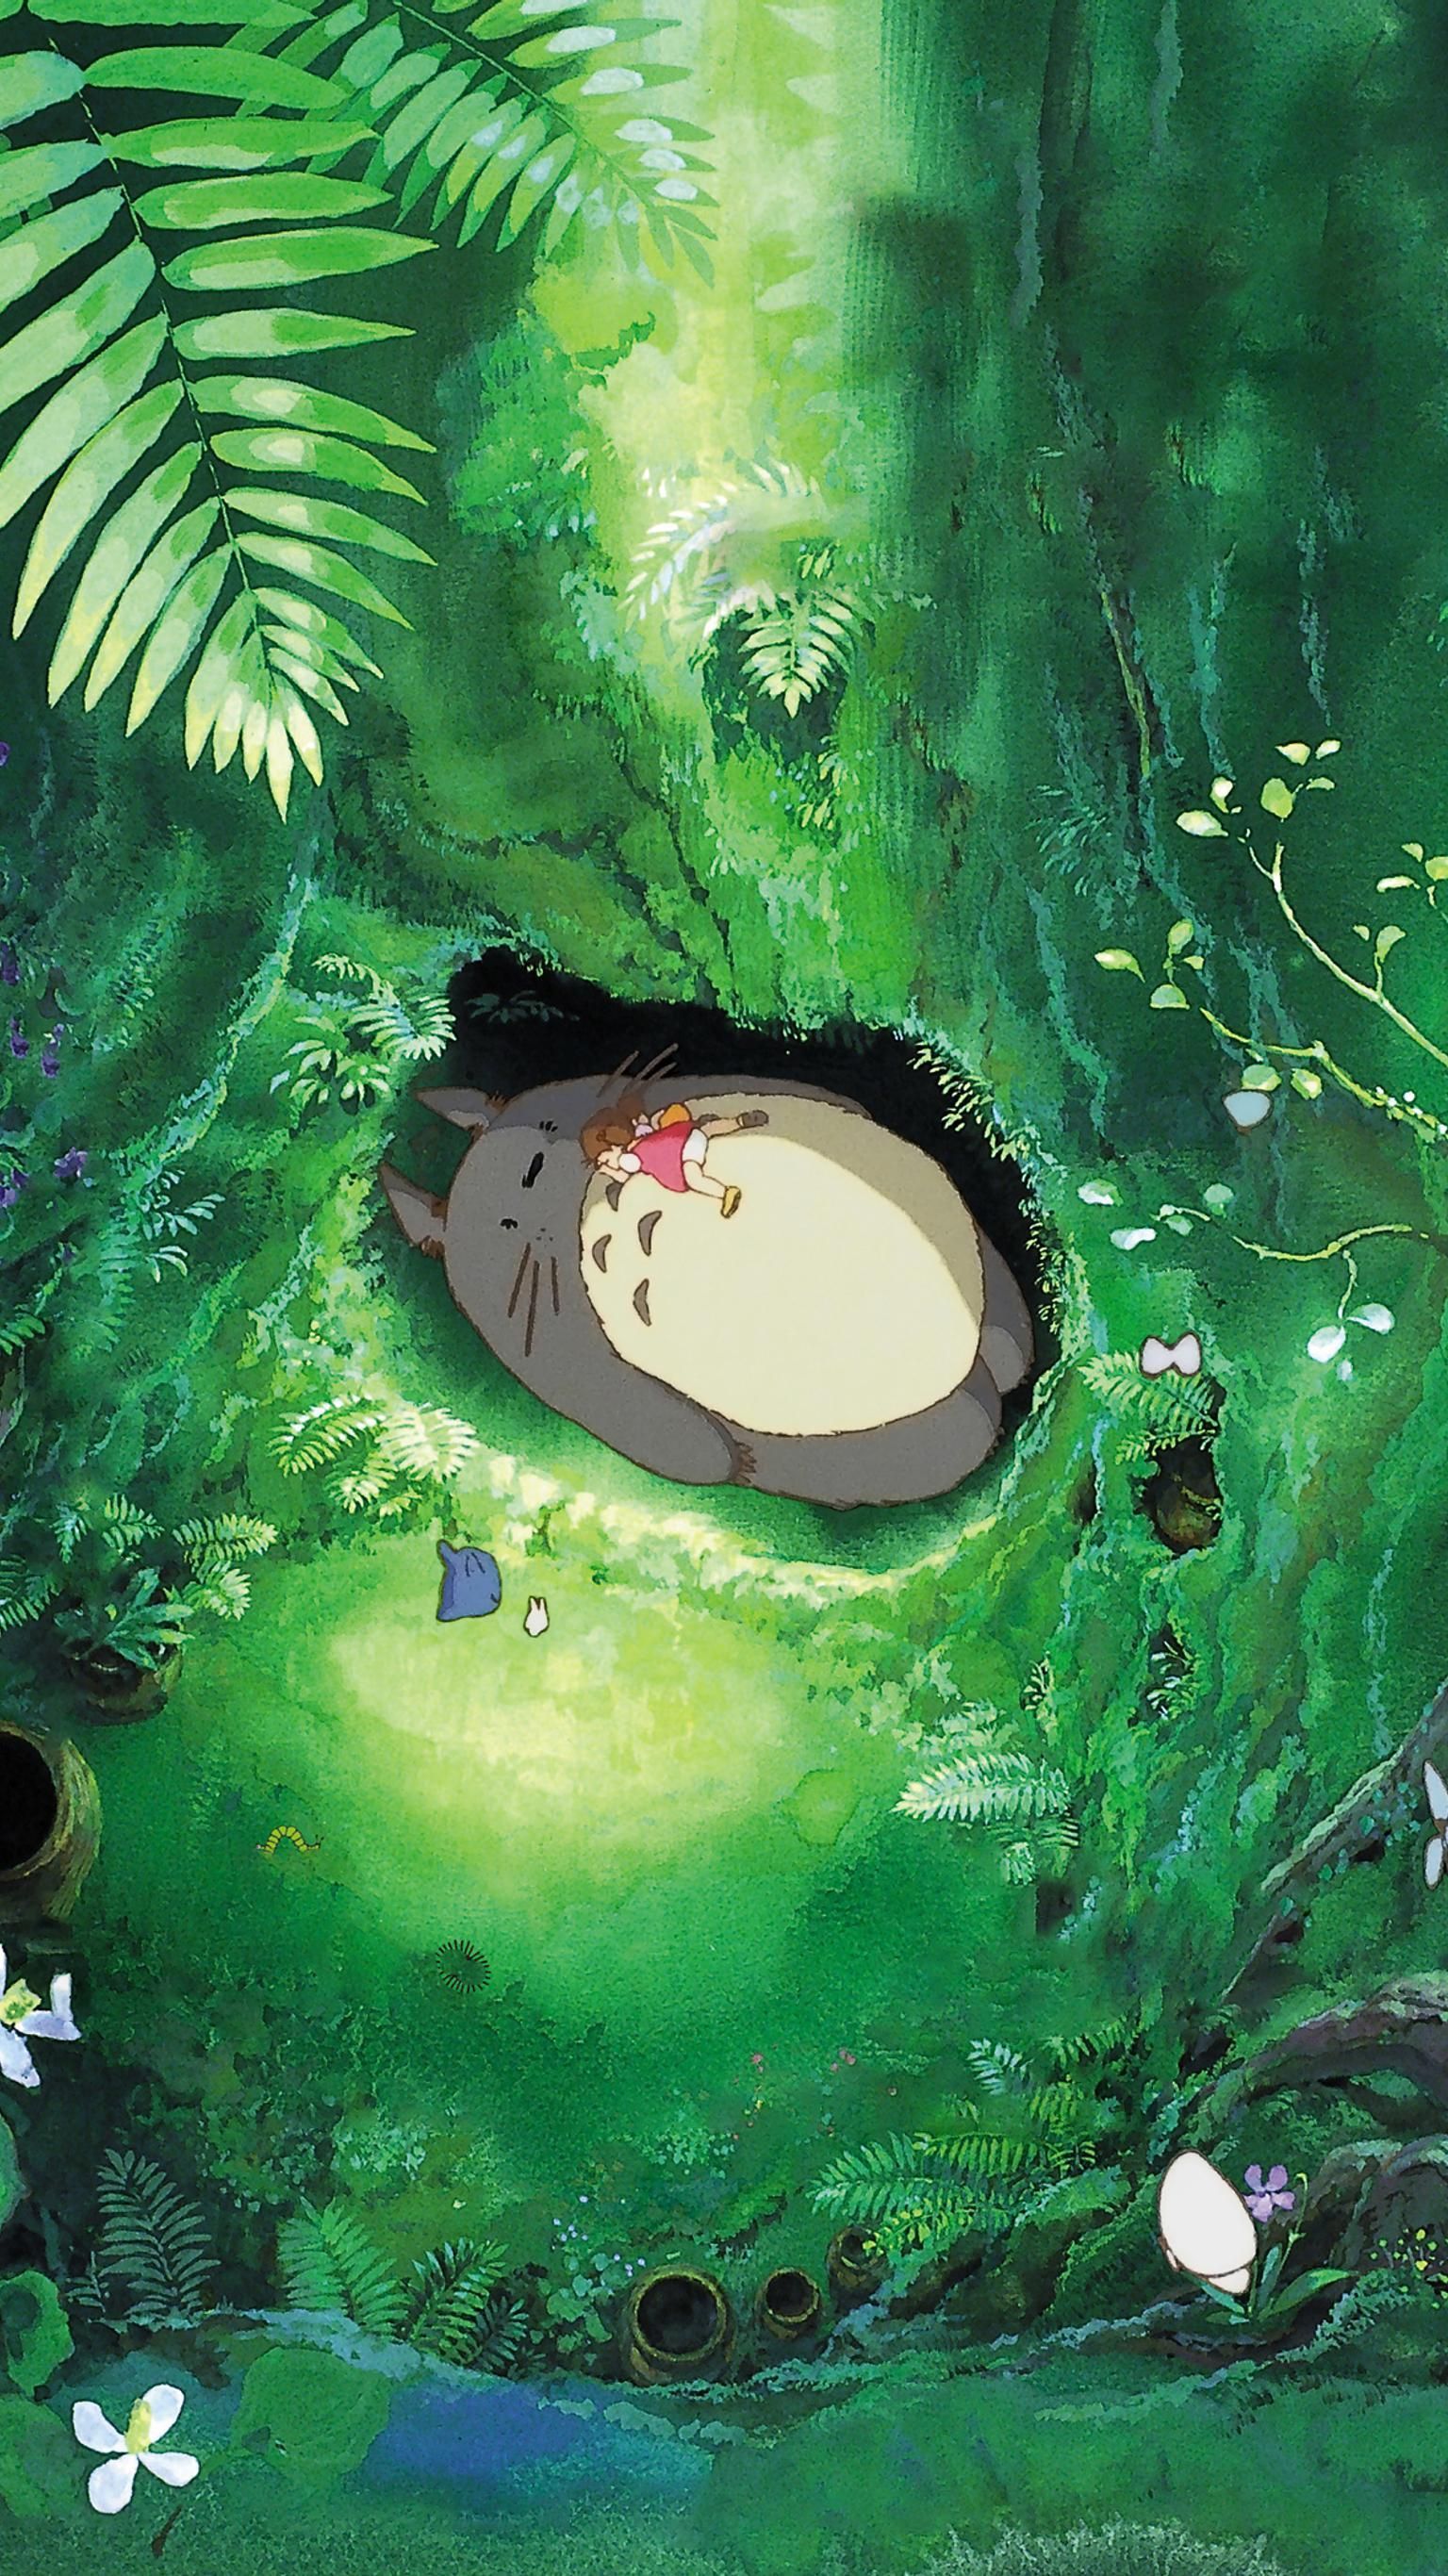 Studio Ghibli Aesthetic Wallpapers - Wallpaper Cave